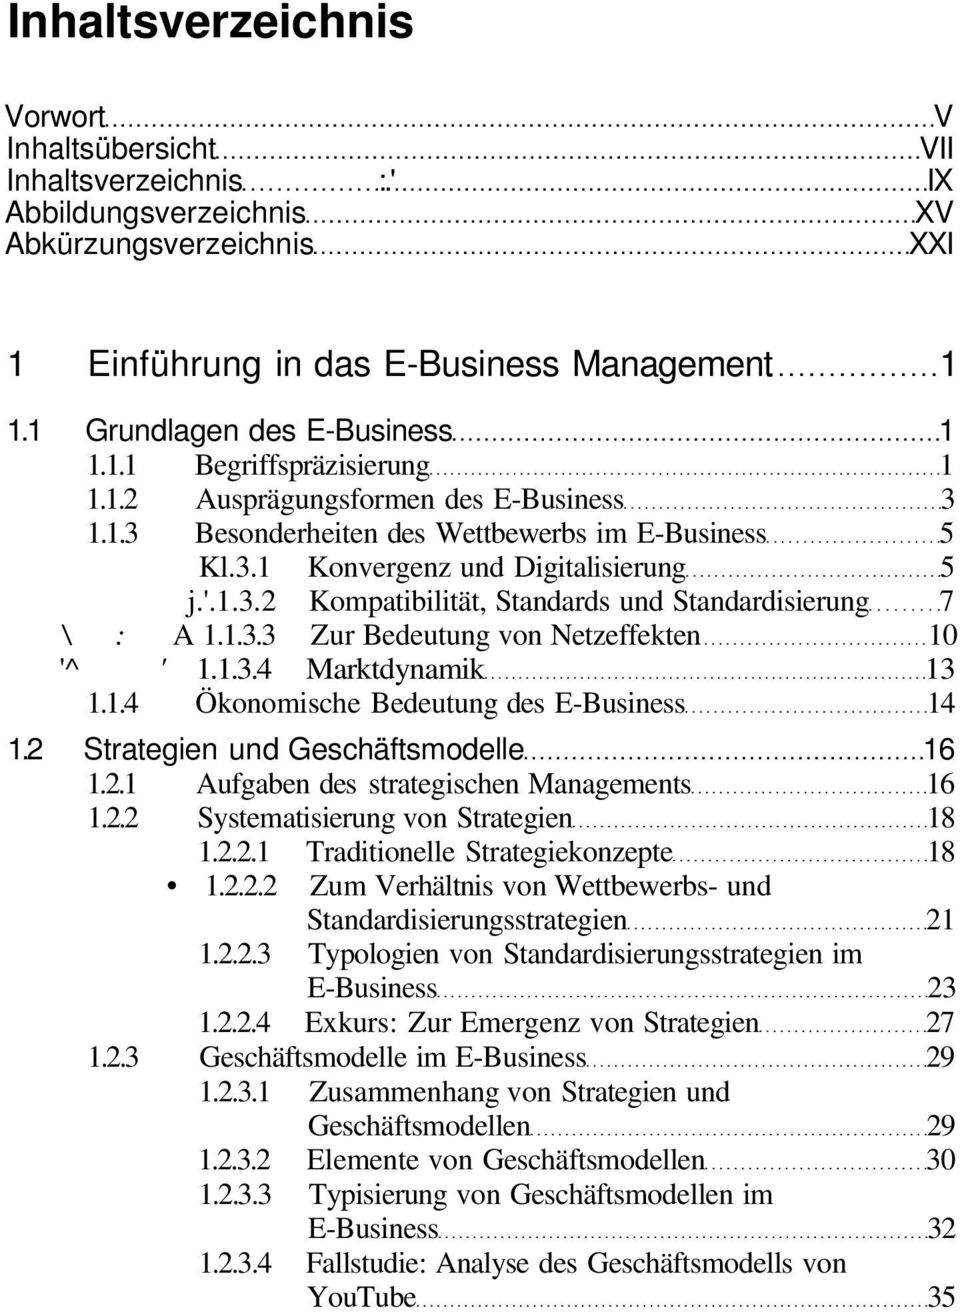 1.3.3 Zur Bedeutung von Netzeffekten 10 '^ ' 1.1.3.4 Marktdynamik 13 1.1.4 Ökonomische Bedeutung des E-Business 14 1.2 Strategien und Geschäftsmodelle 16 1.2.1 Aufgaben des strategischen Managements 16 1.